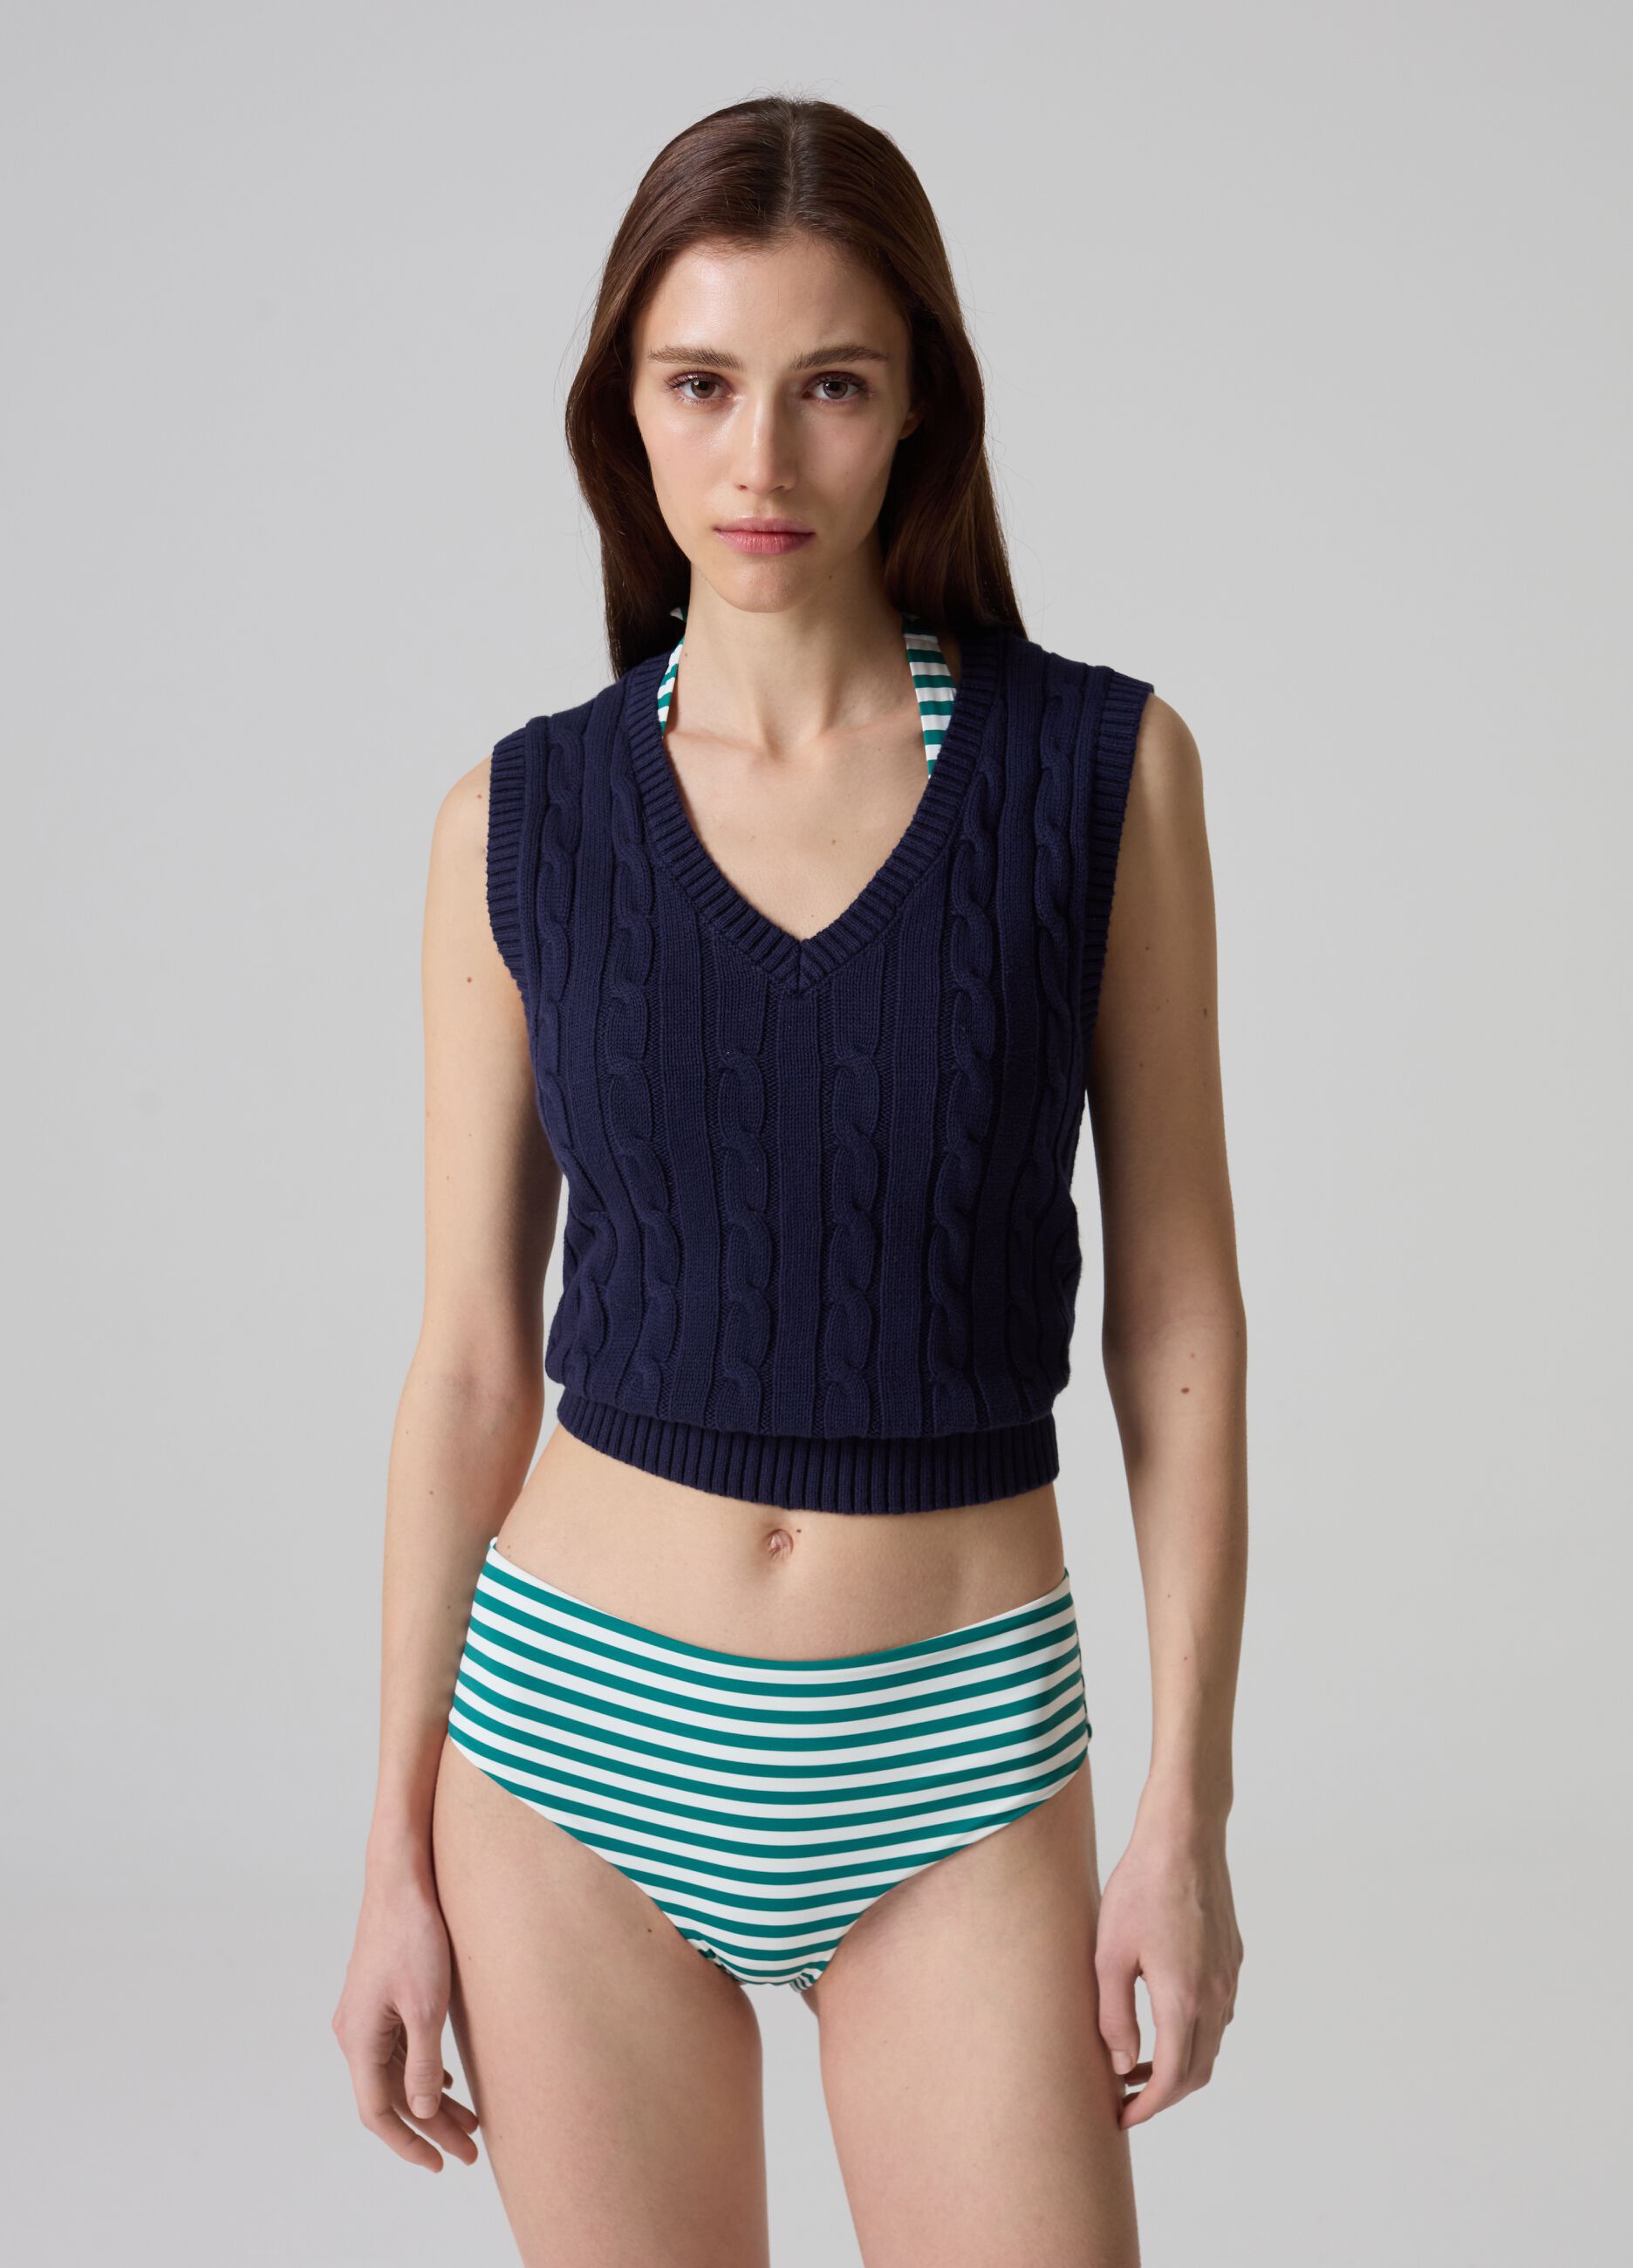 High-waist striped bikini bottoms